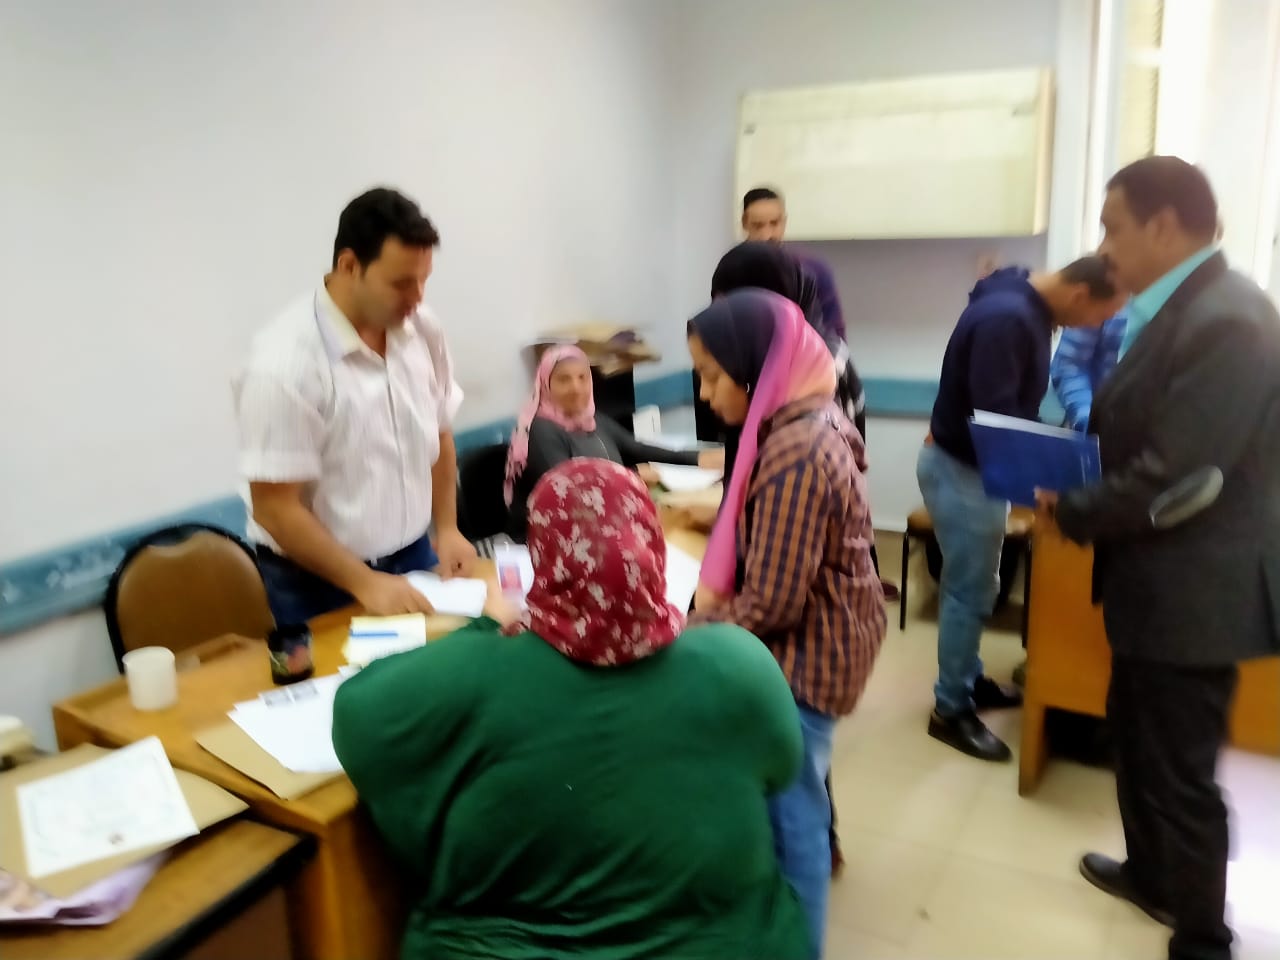 زحام بدار العلوم القاهرة لسحب استمارات الترشح لانتخابات اتحاد الطلاب (2)